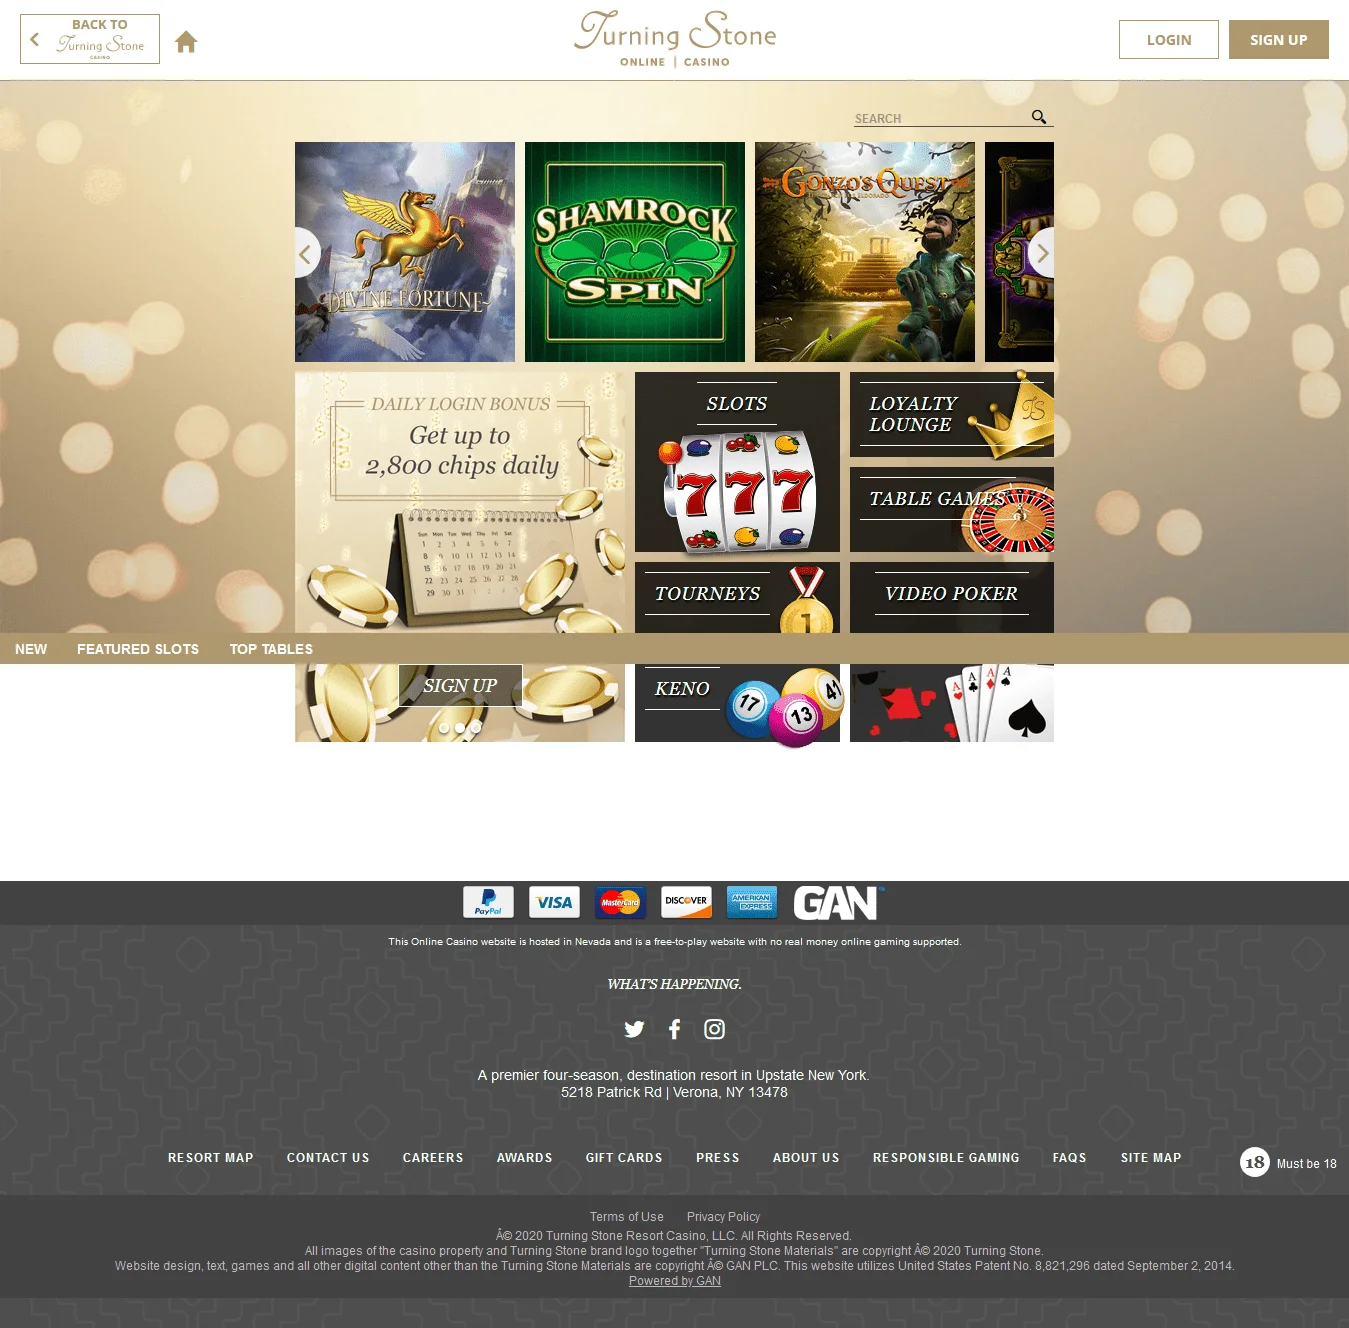 Darmowe automaty do gry w kasynie online Turn Stone Kasyno online